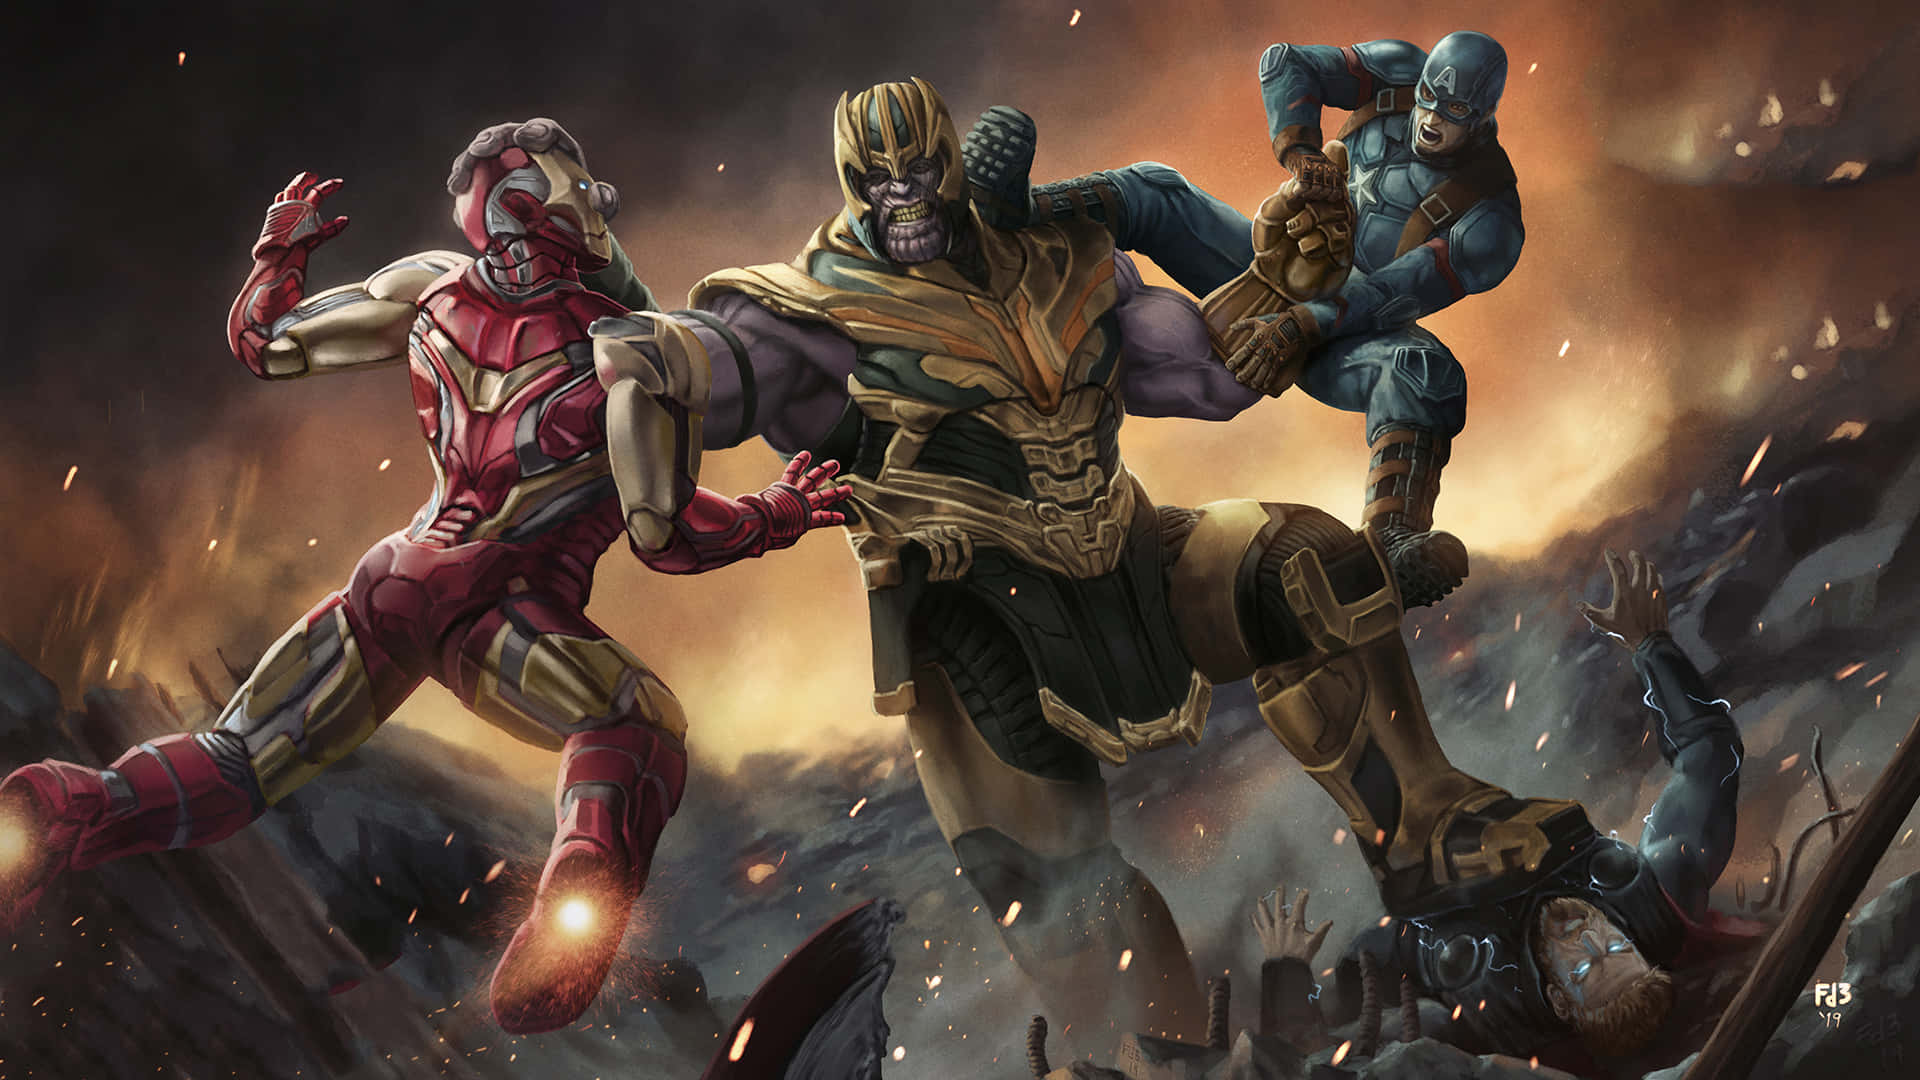 Caption: Endgame Epic Showdown: Avengers Assembling Against Thanos